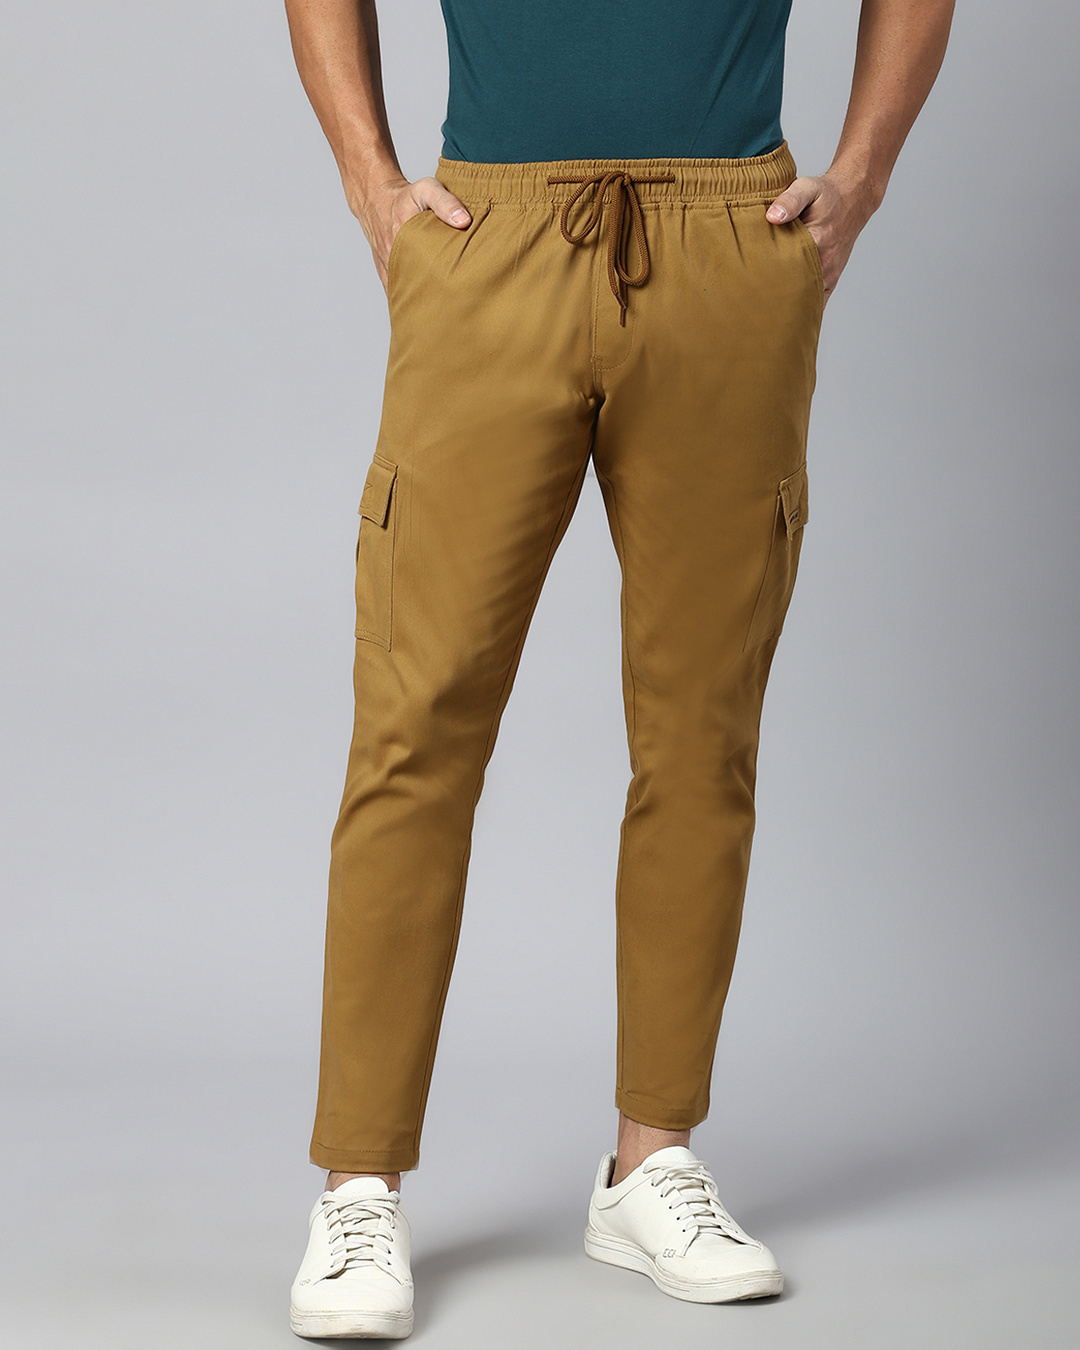 Buy Men's Beige Cargo Trousers Online at Bewakoof